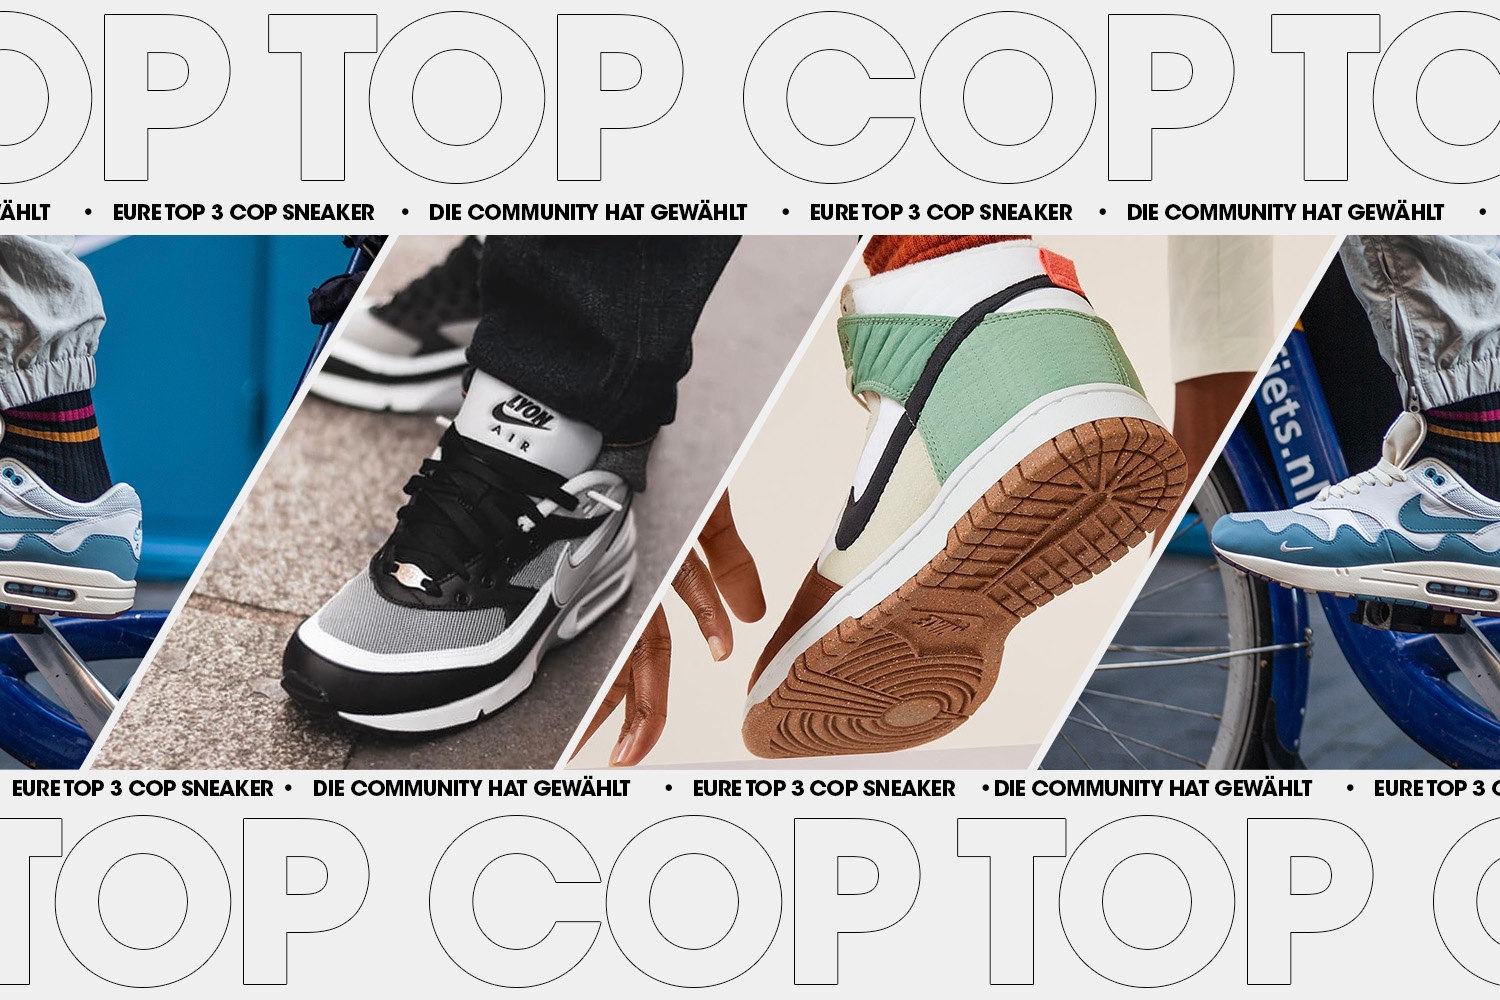 Die Community hat gewählt: Eure Top 3 Cop Sneaker Woche 44